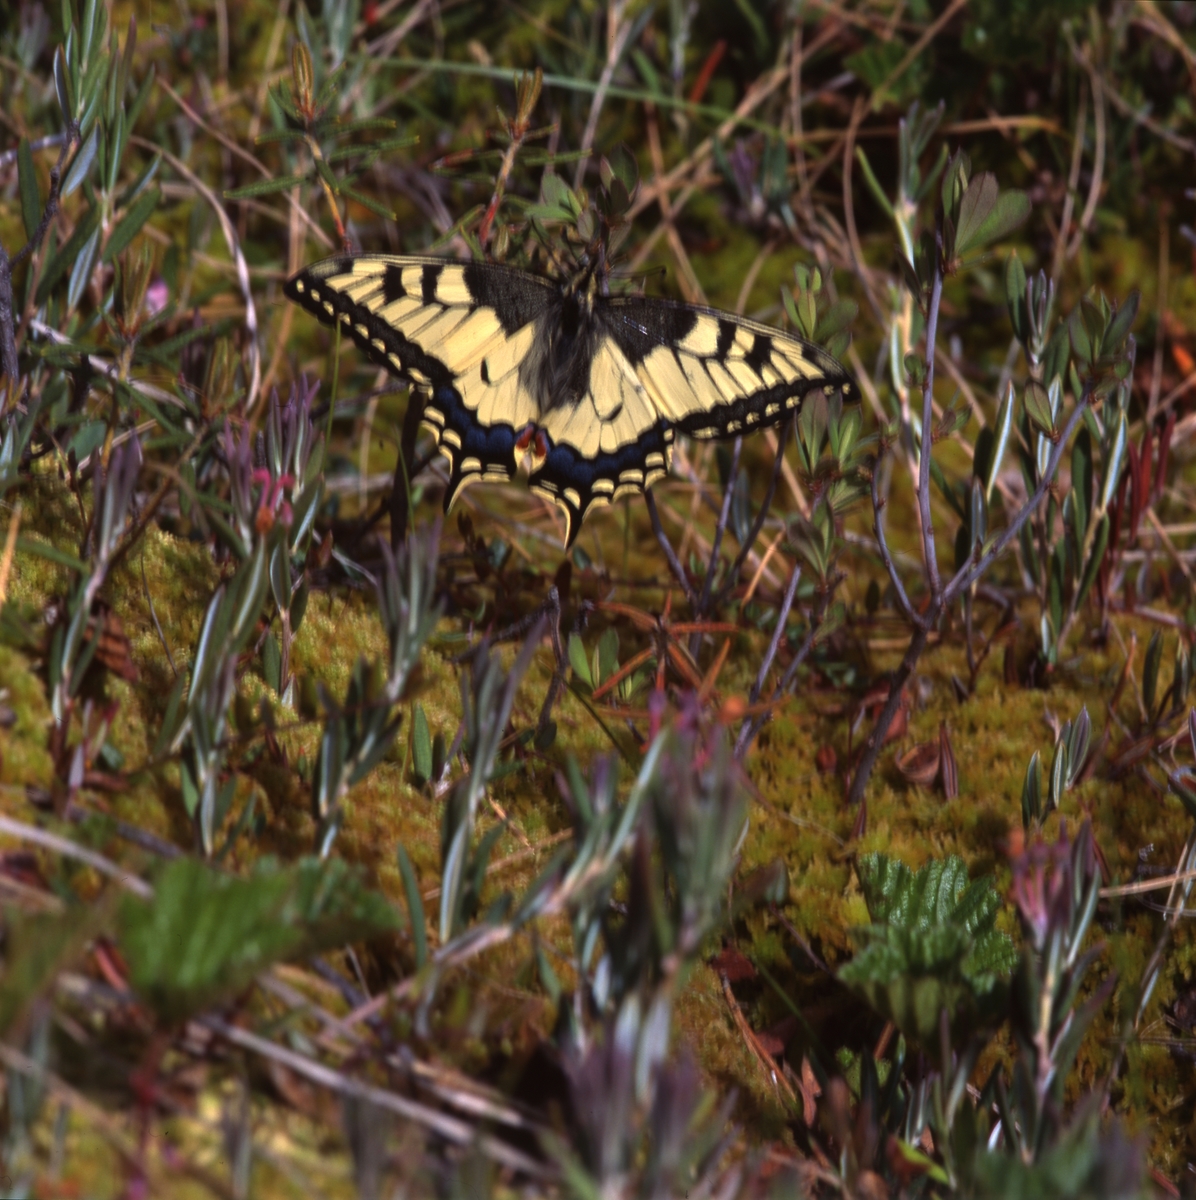 Makaonfjäril (Papilio machaon) som även kallas för för svalstjärt eller parasollfjäril och hör till familjen riddarfjärilar. Här vid Stråsjön 25 juni 1996.